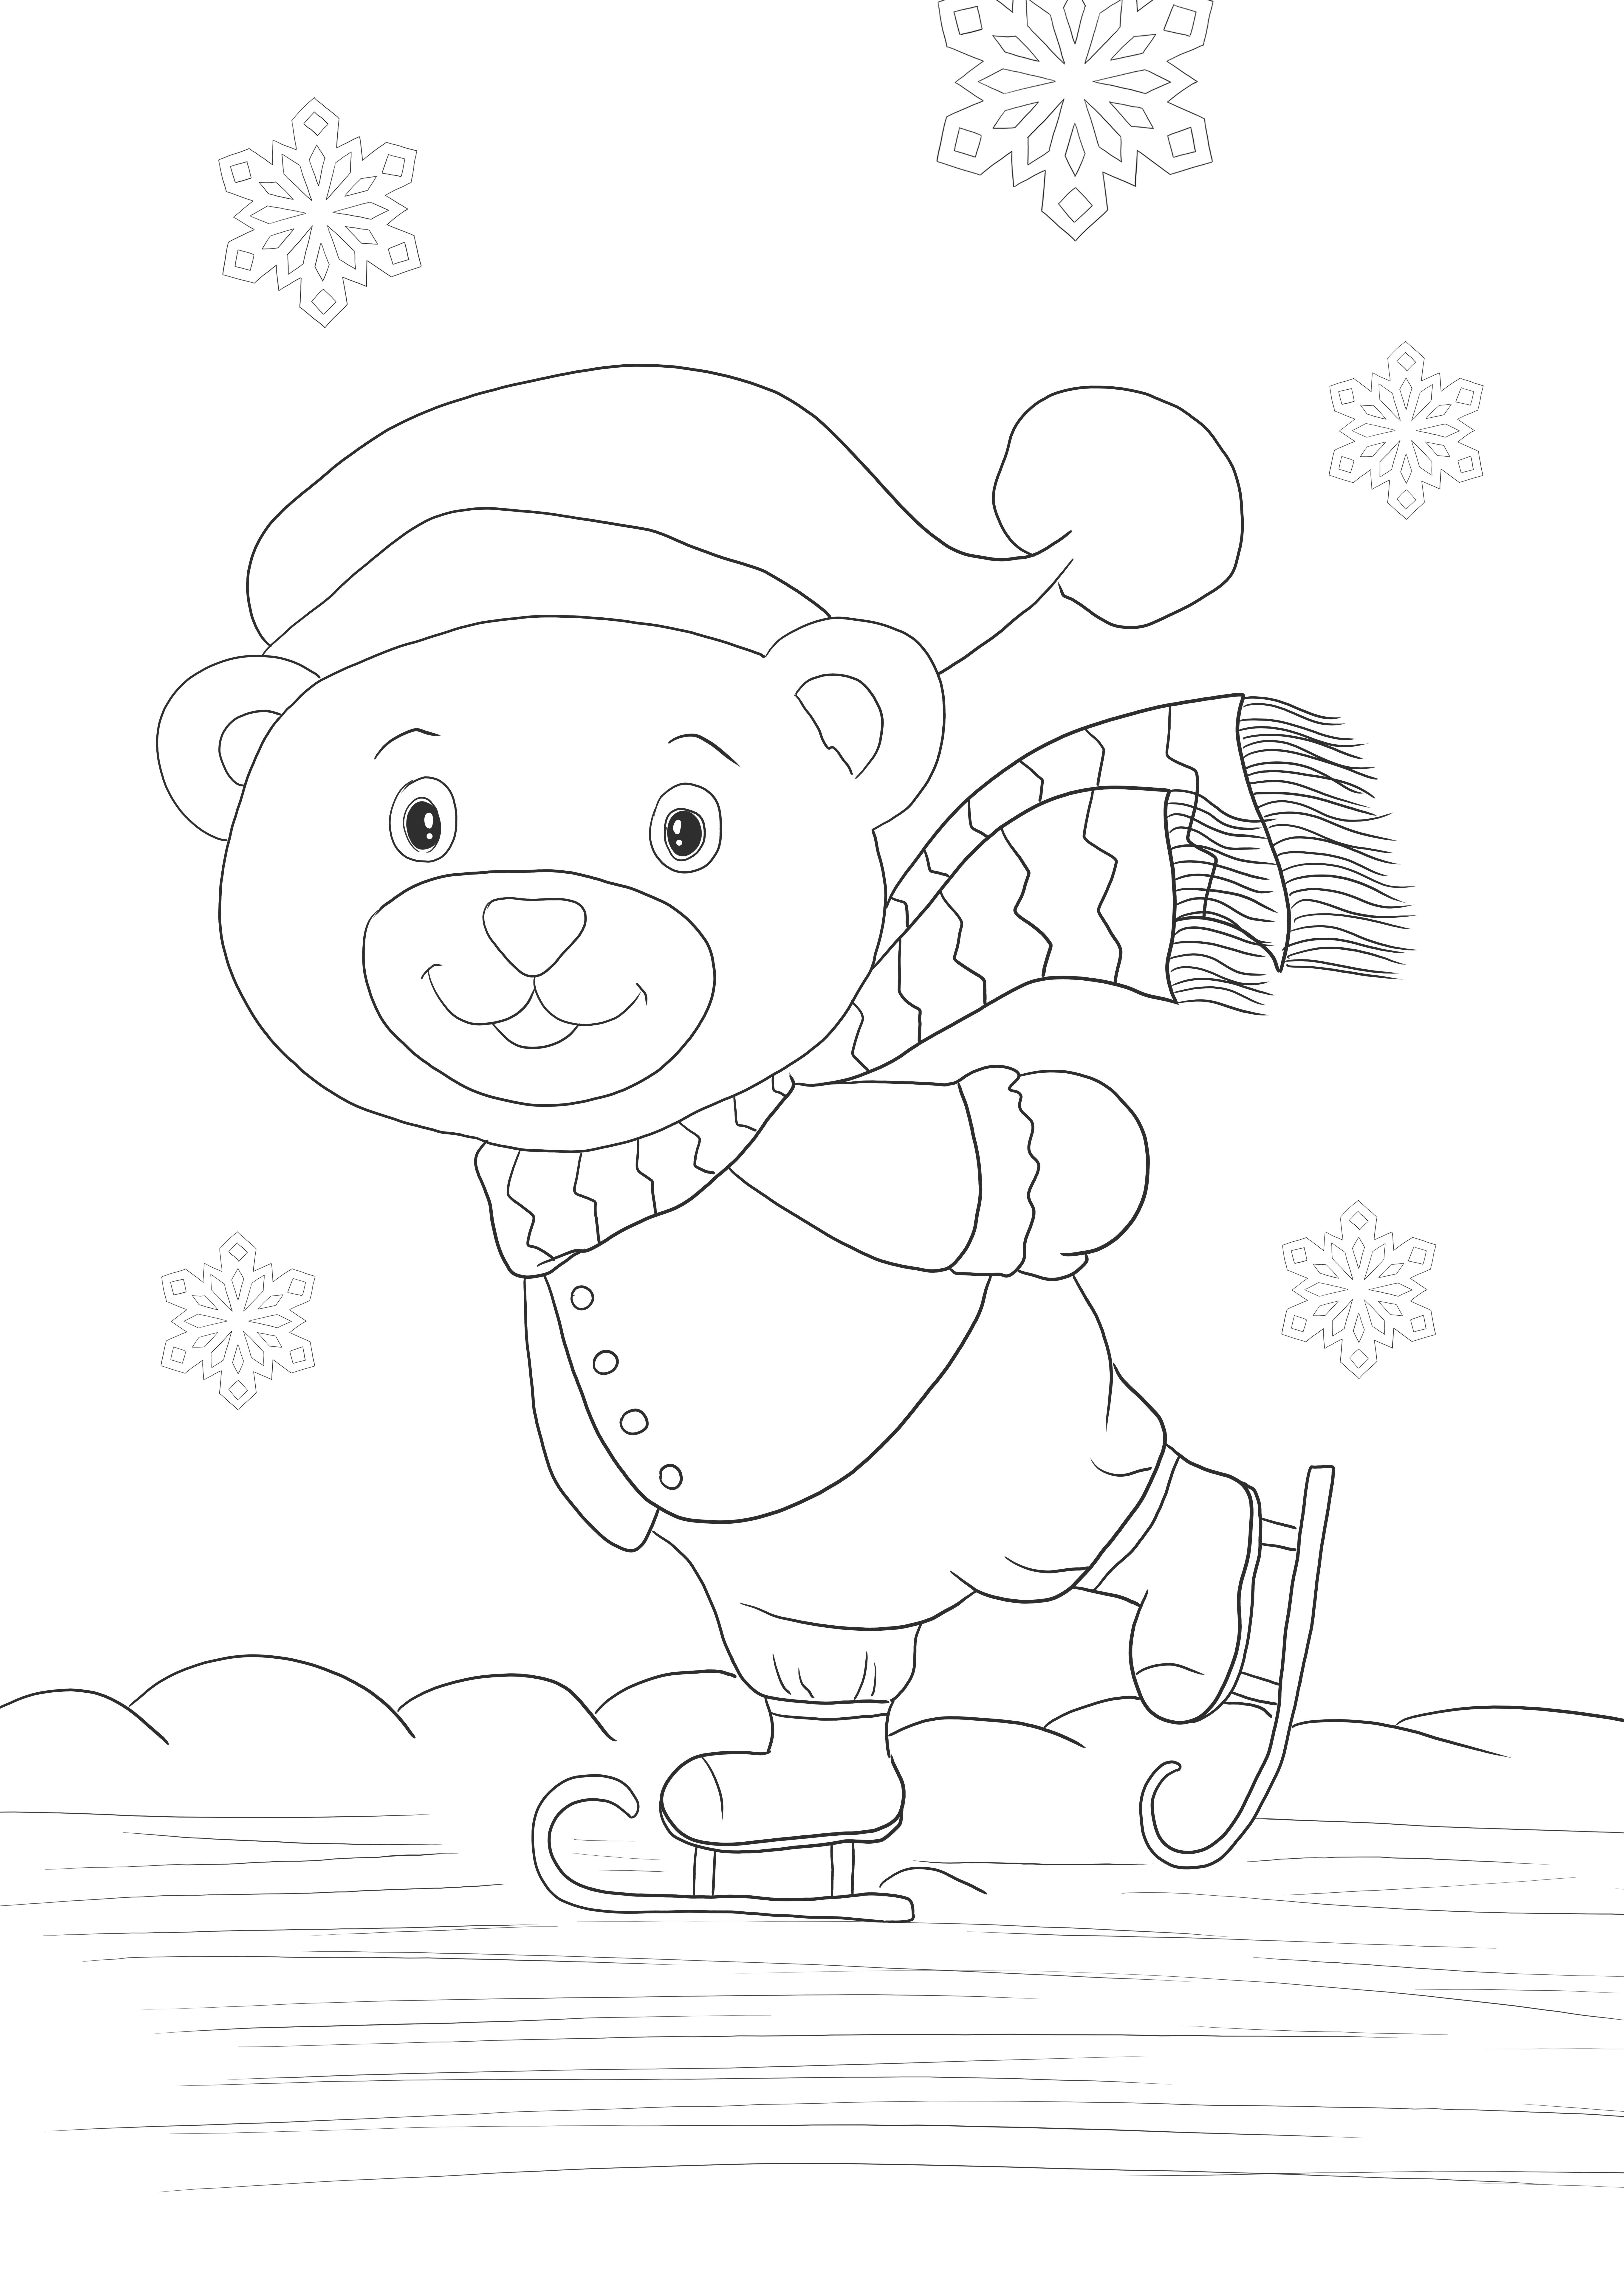 Niedźwiedź jeżdżący na łyżwach na bezlodowym kolorowaniu i pobieraniu obrazu